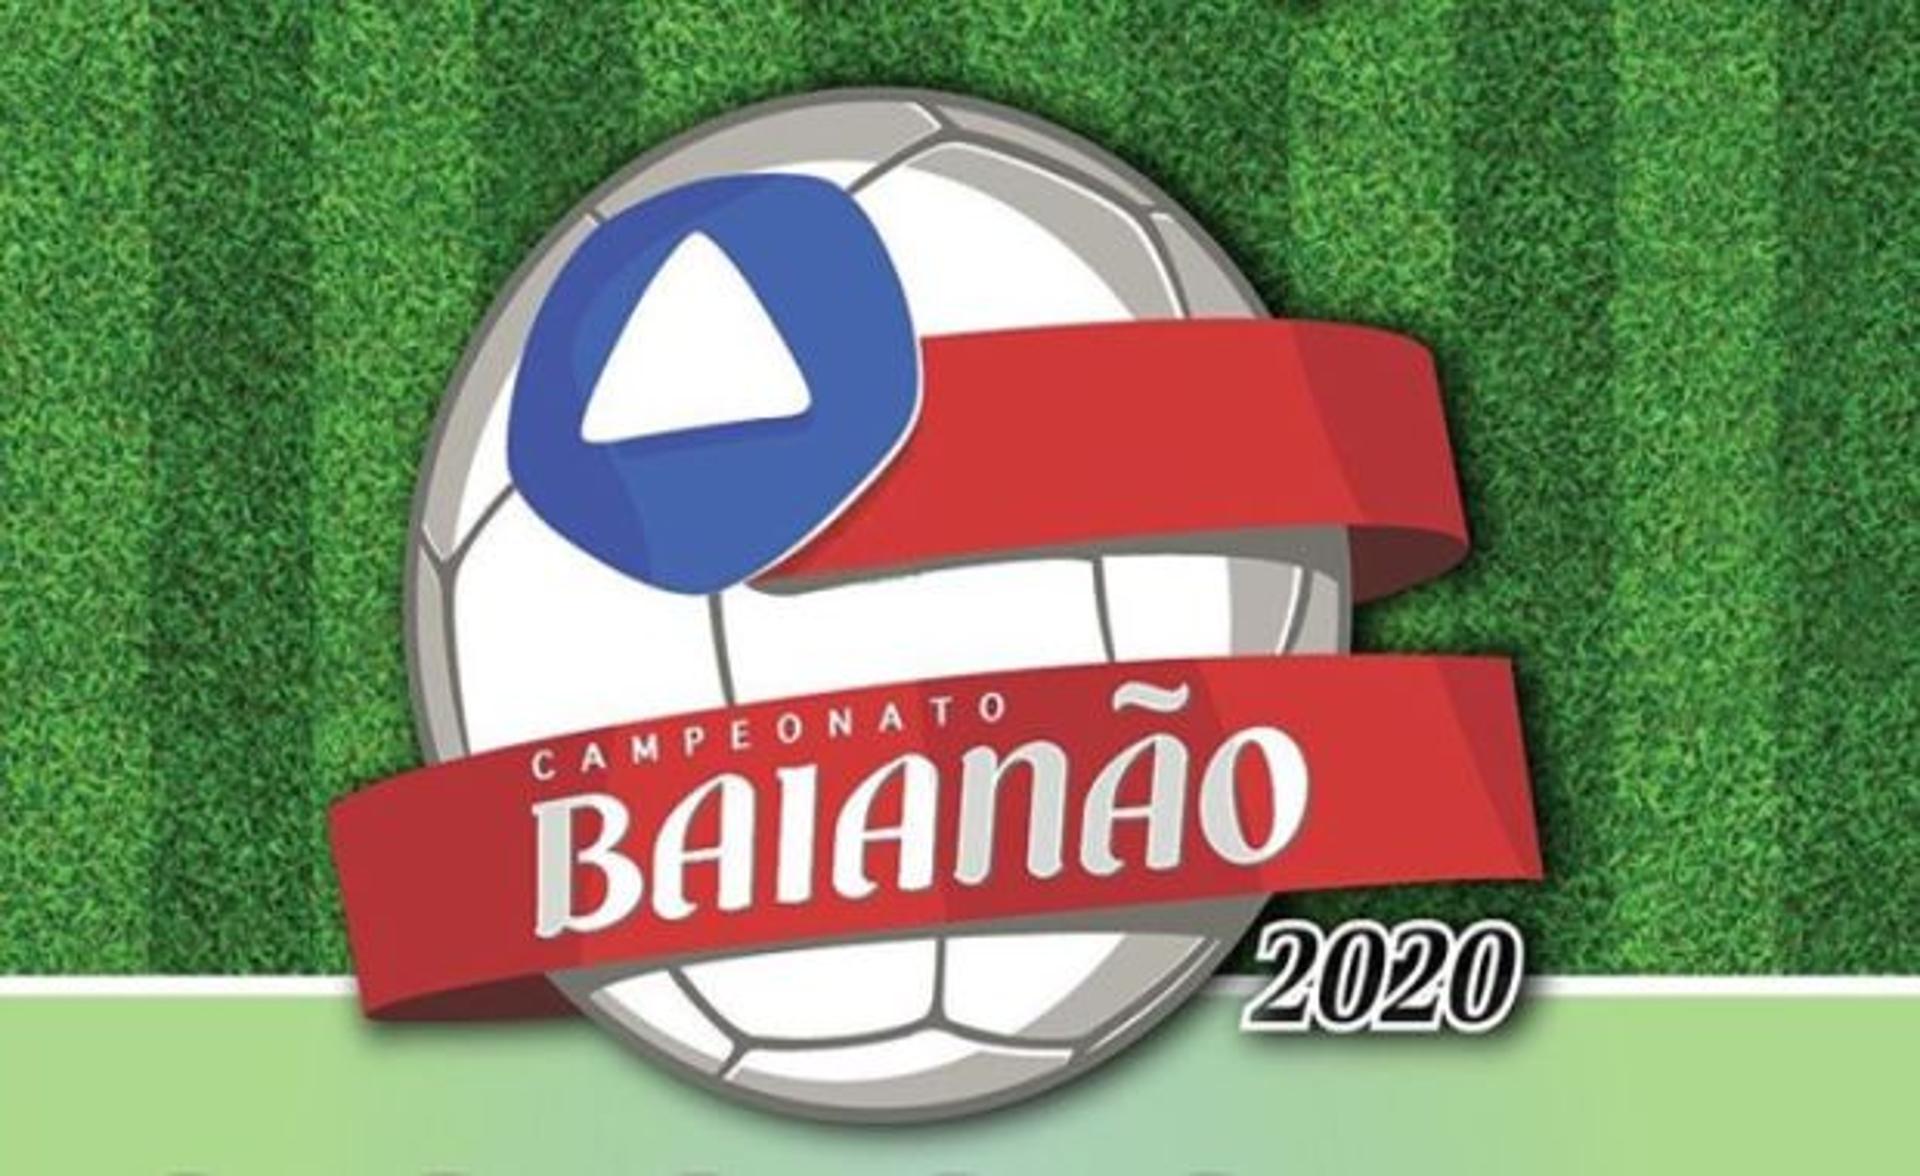 Baianão 2020